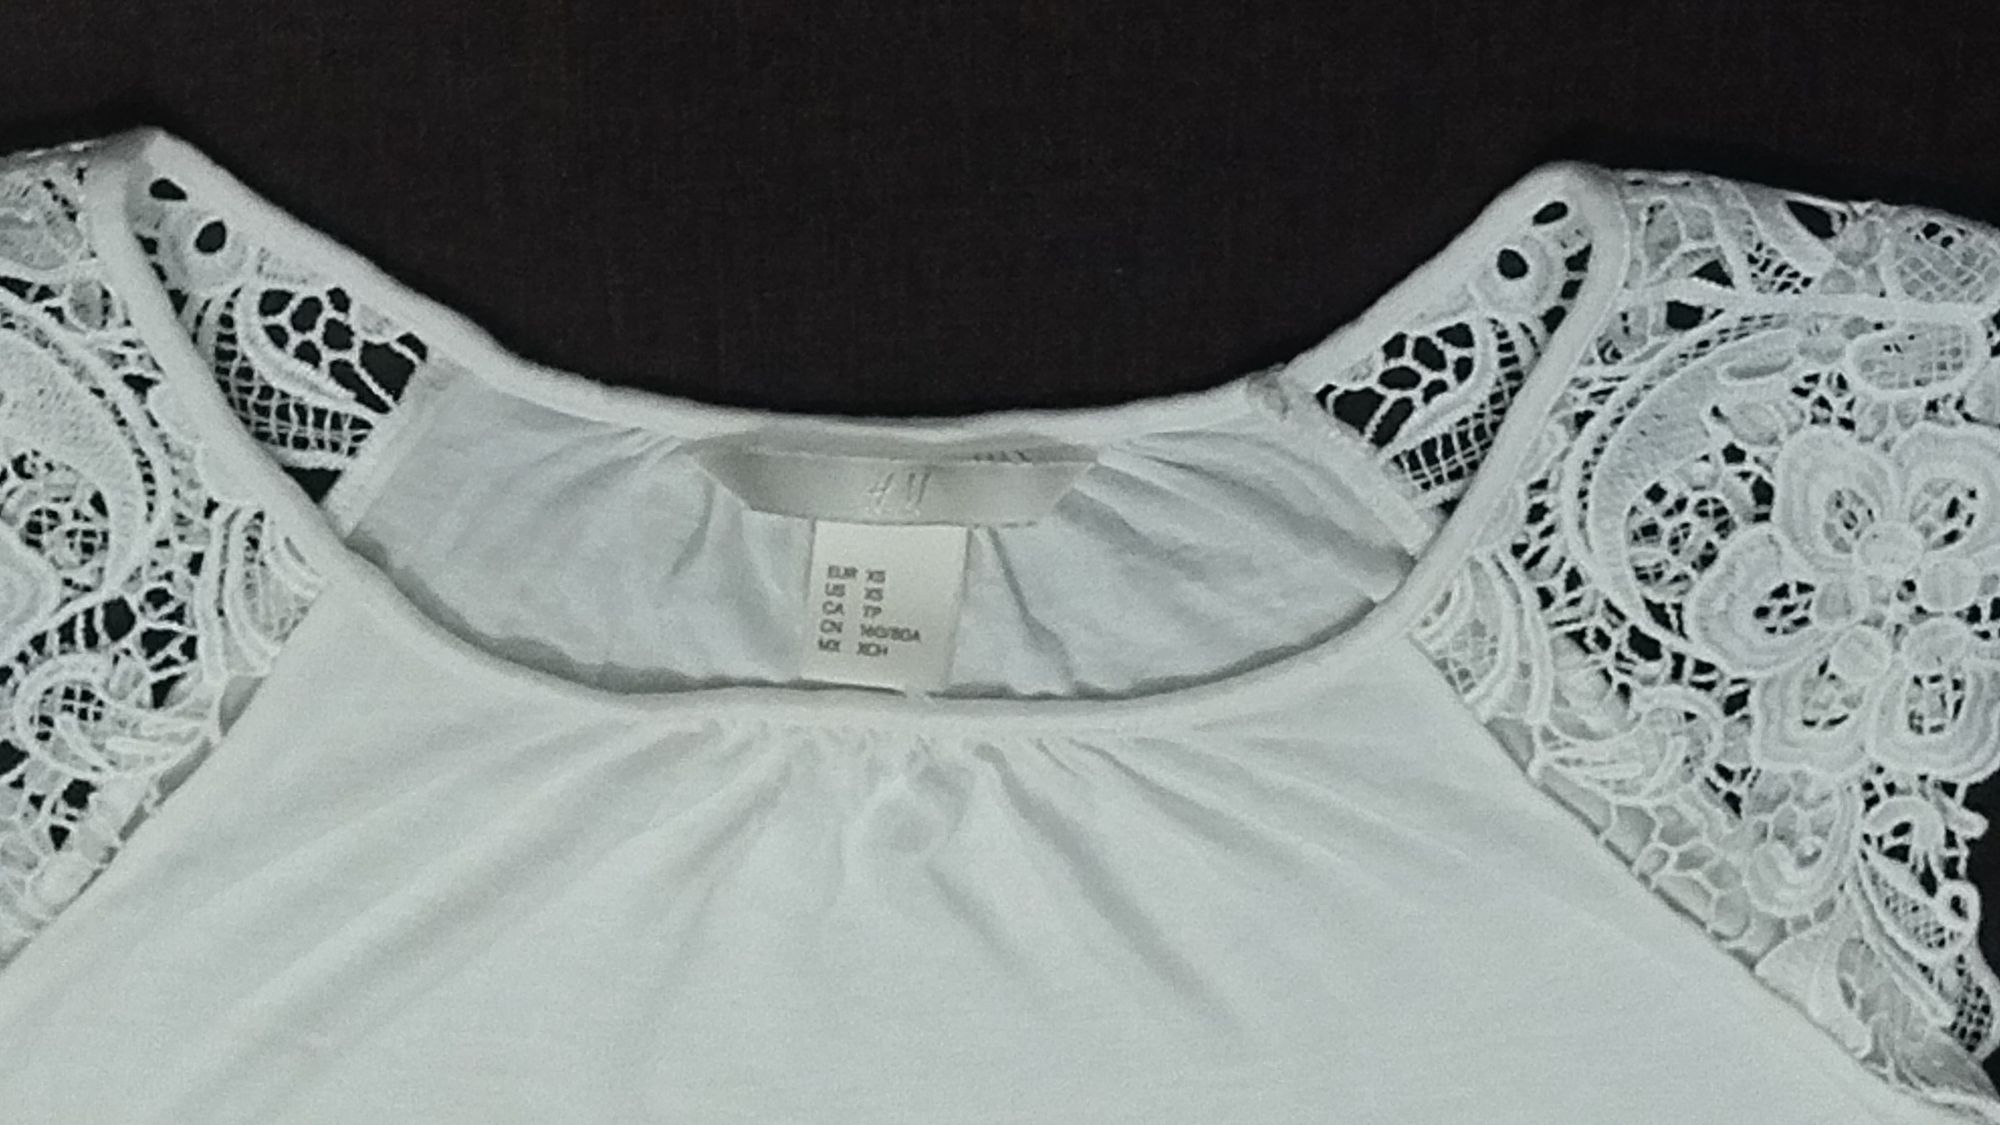 NOWA firmy H&M Śliczna biała  bluzeczka  z rękawkami z gipiury